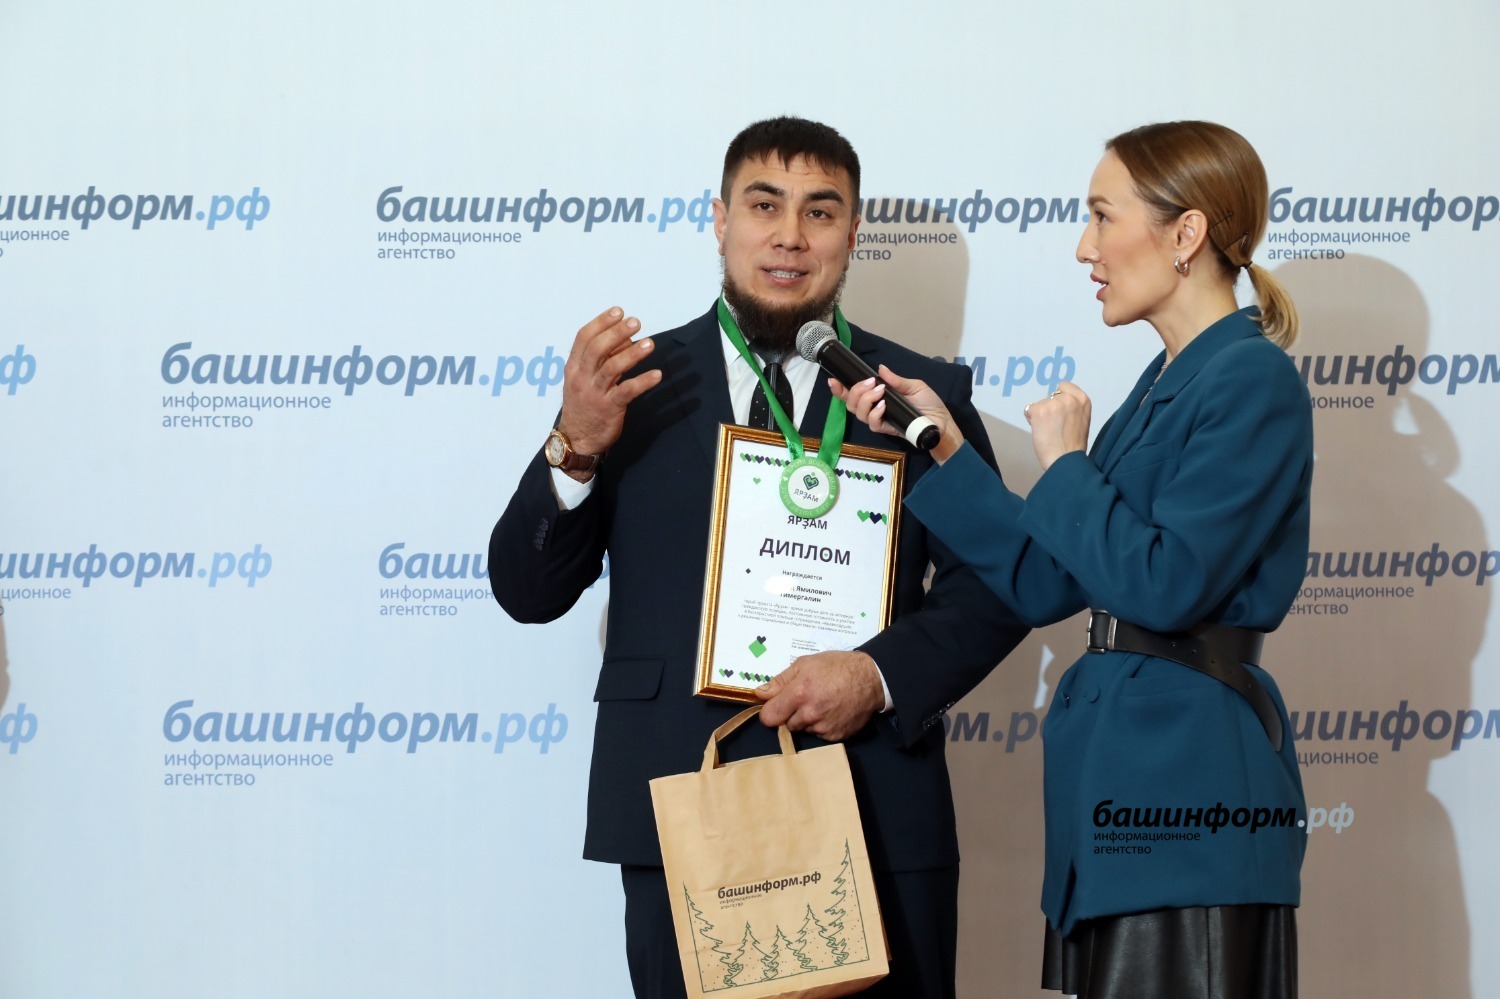 Валерий Шахов  Э. Тимергалин на вручении диплома «Ярзам» в ИА «Башинформ»